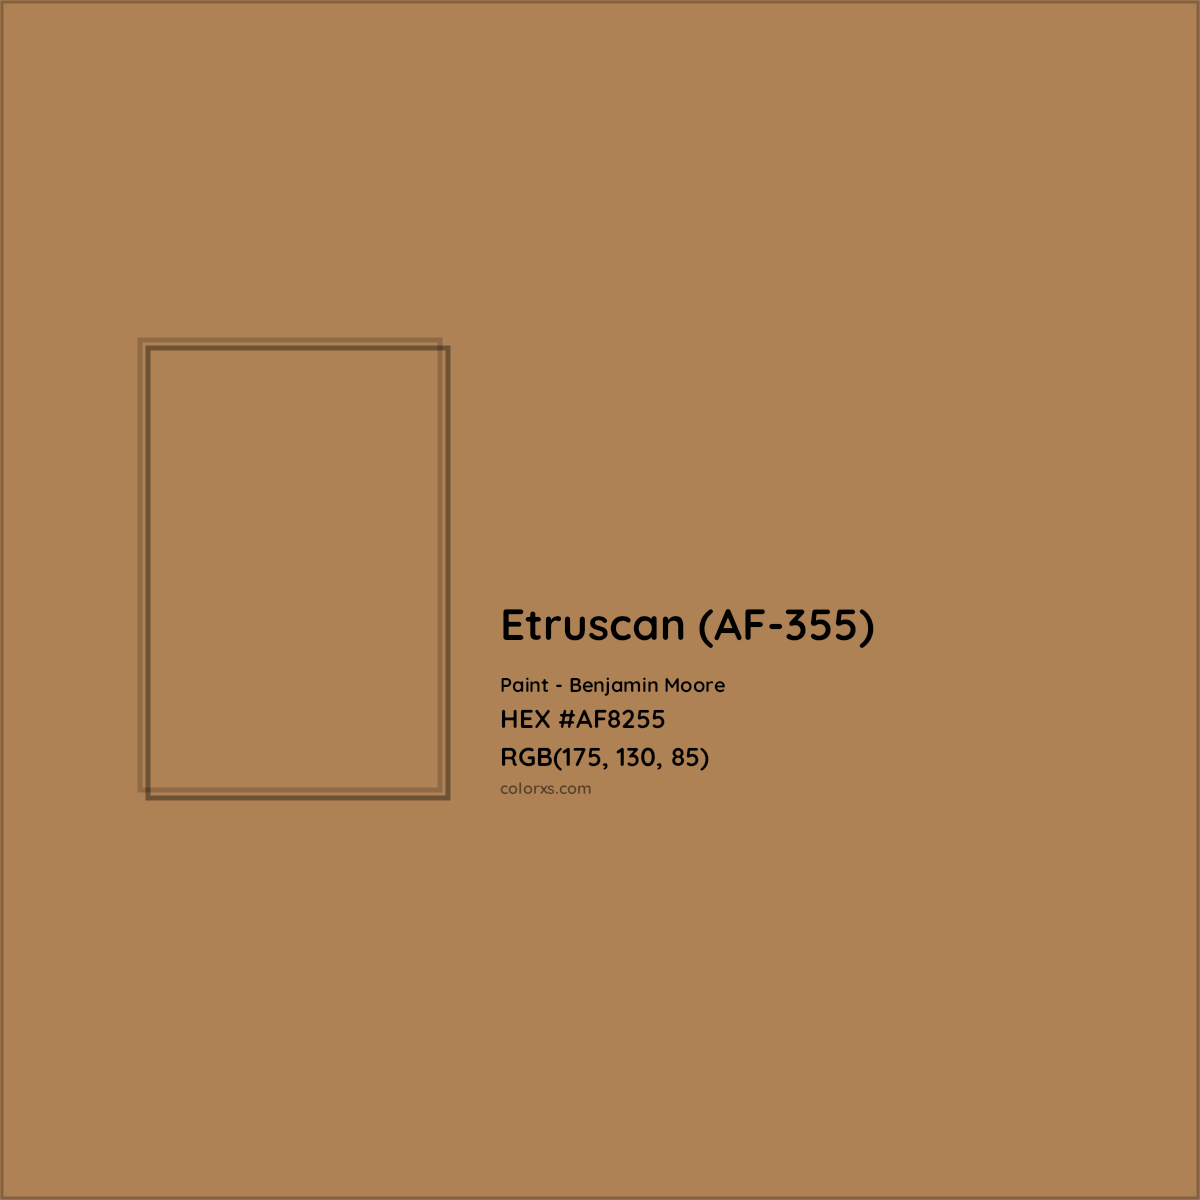 HEX #AF8255 Etruscan (AF-355) Paint Benjamin Moore - Color Code